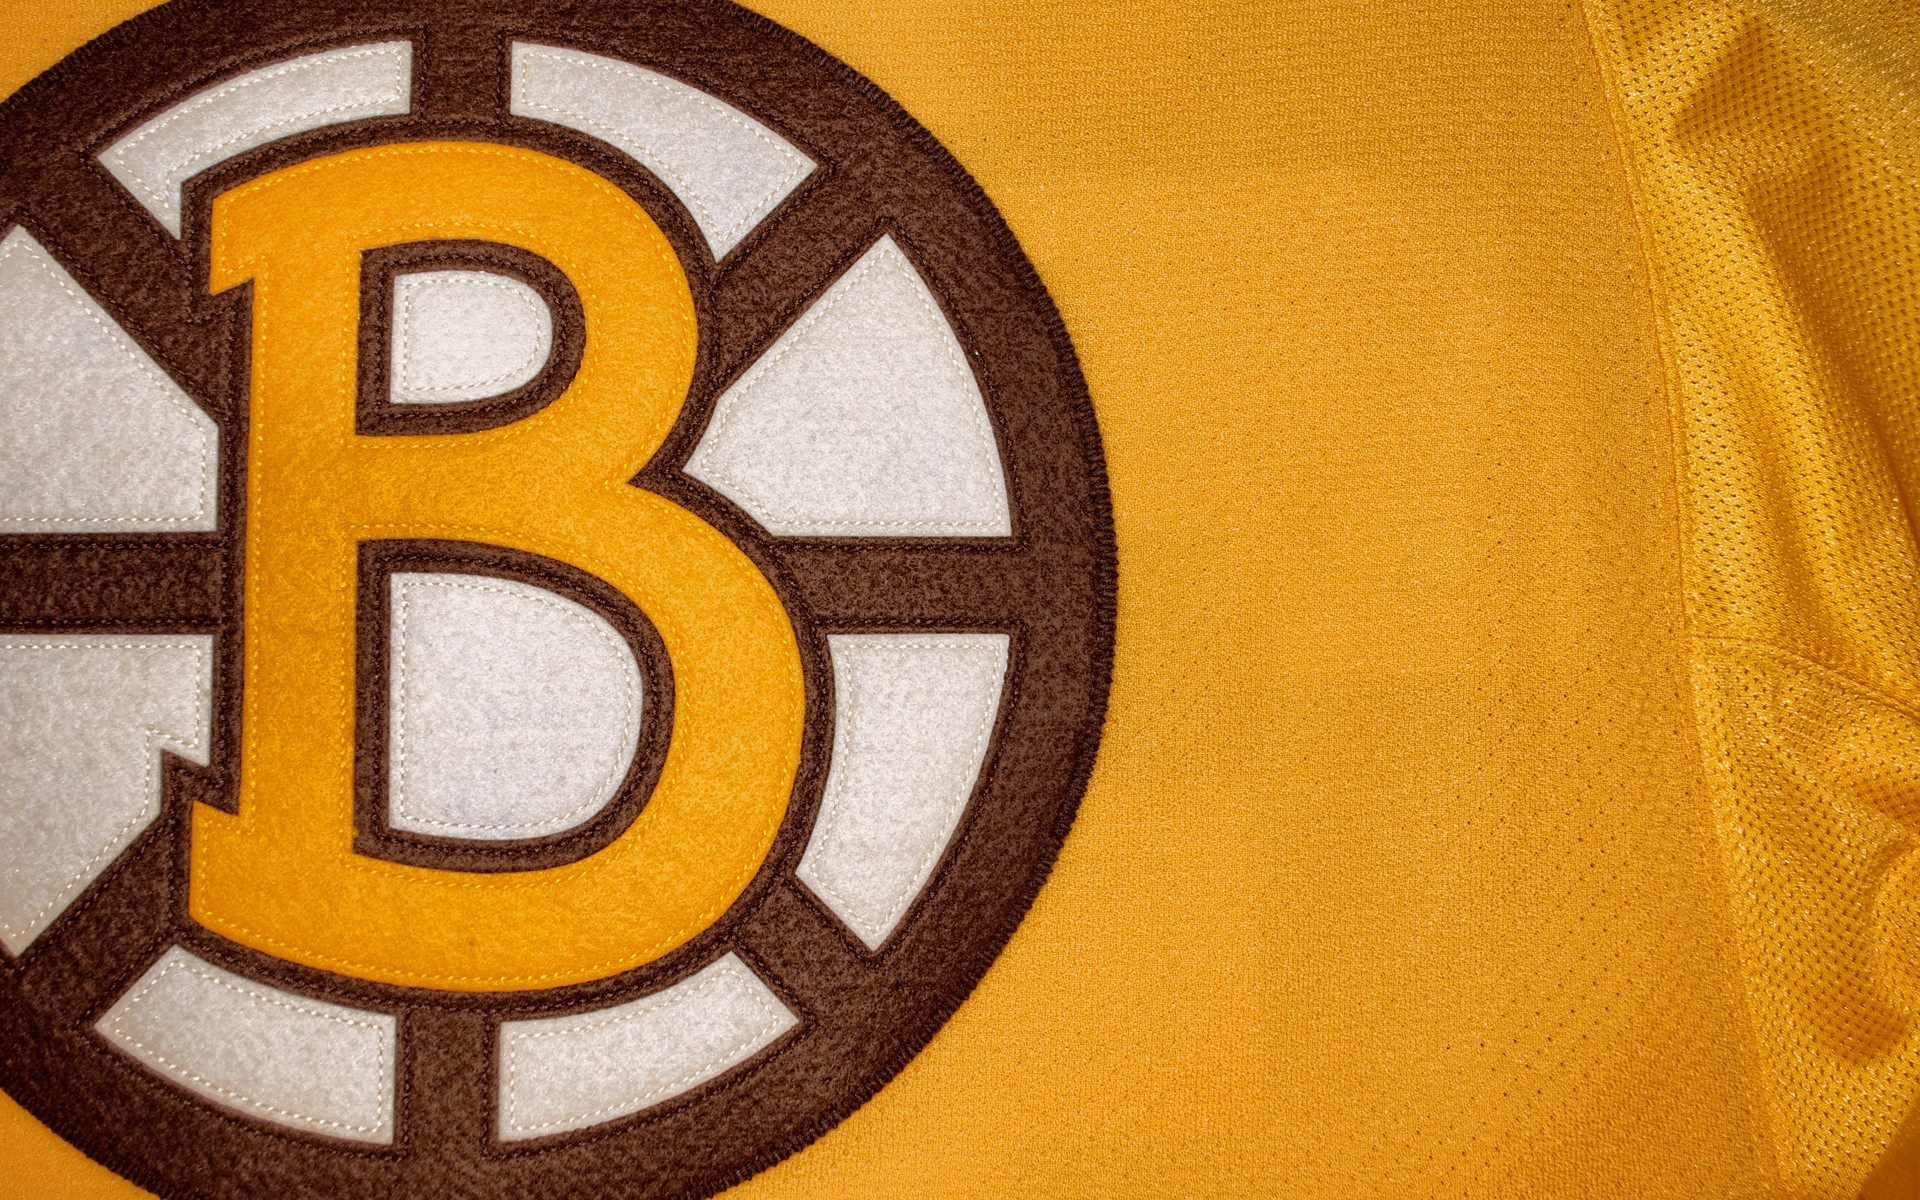 1920x1200 ... Boston Bruins Logo Wallpaper - WallpaperSafari ...